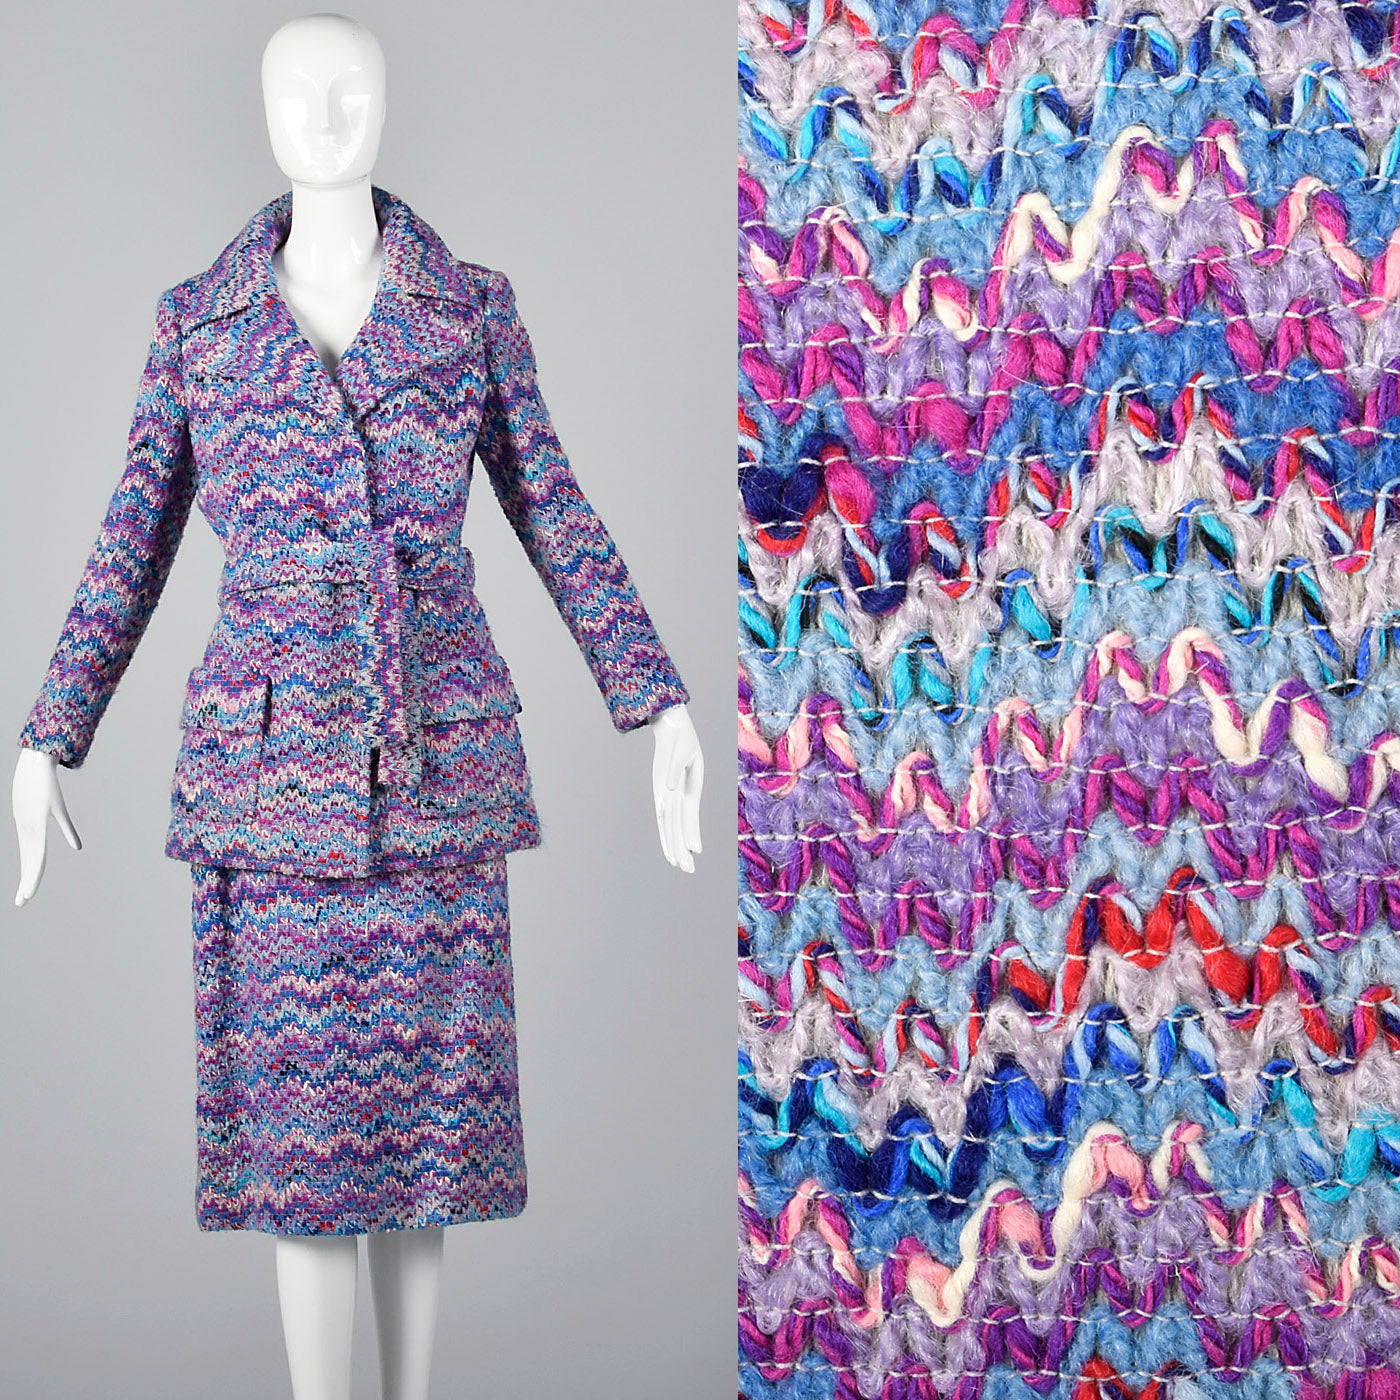 1970s Via Veneto Couture Boutique Purple Tweed Skirt Suit